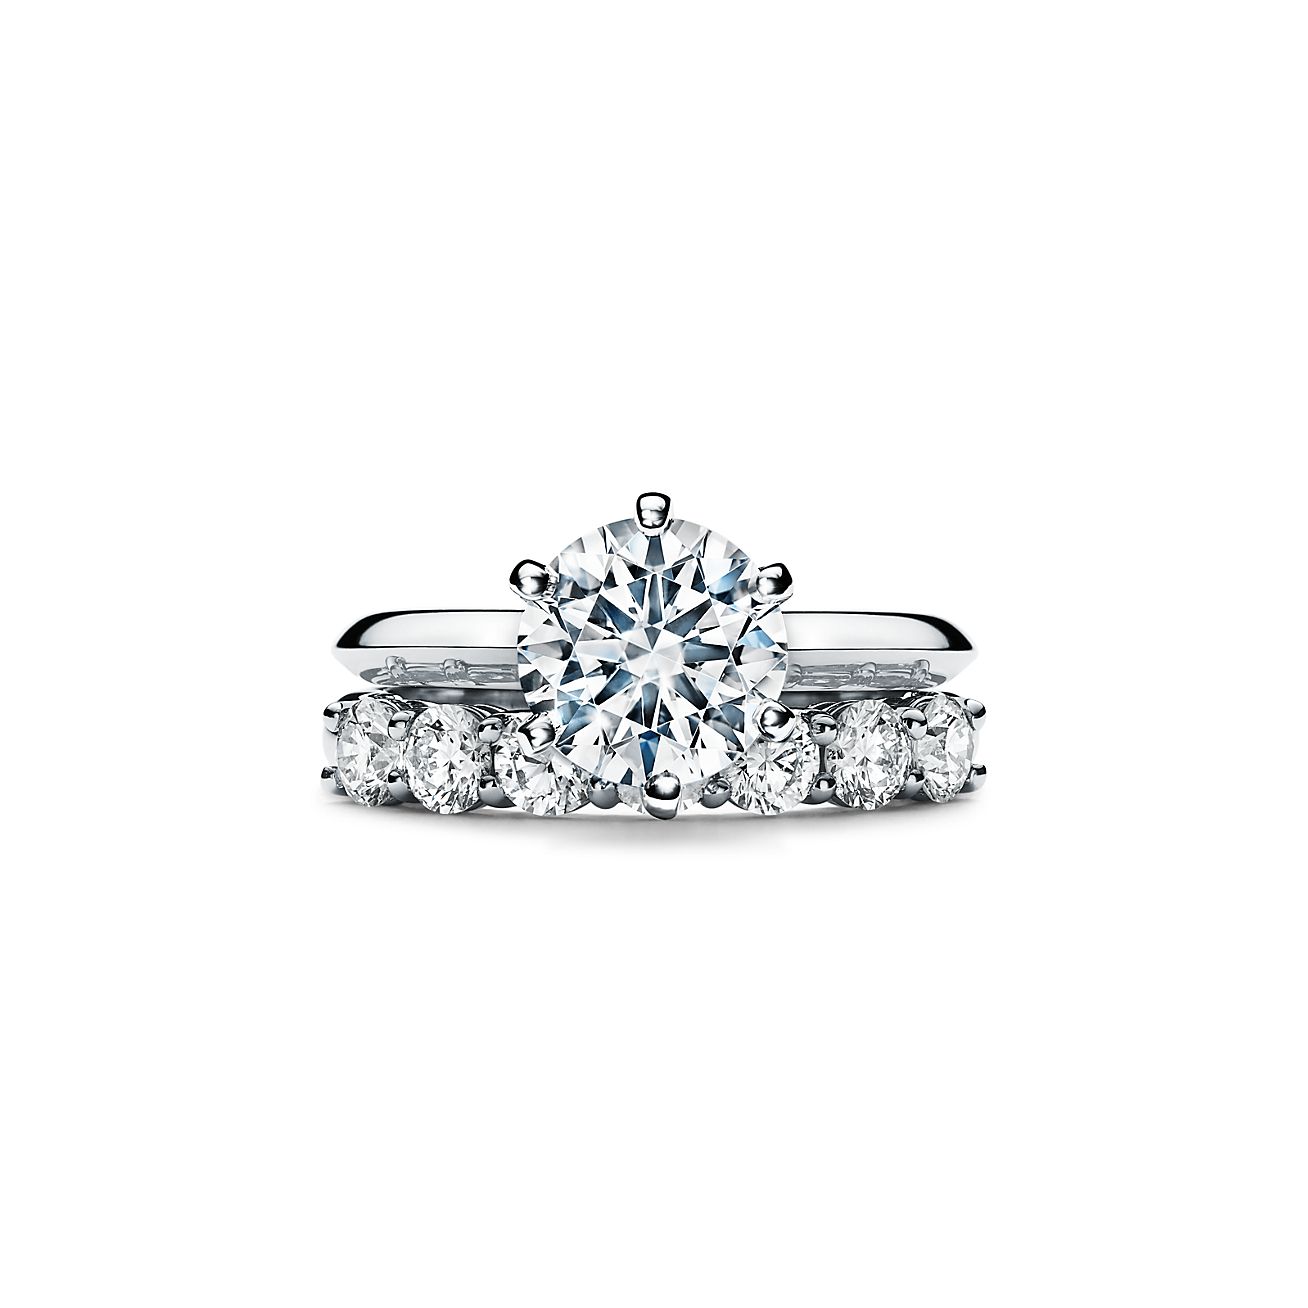 2 carat diamond tiffany ring